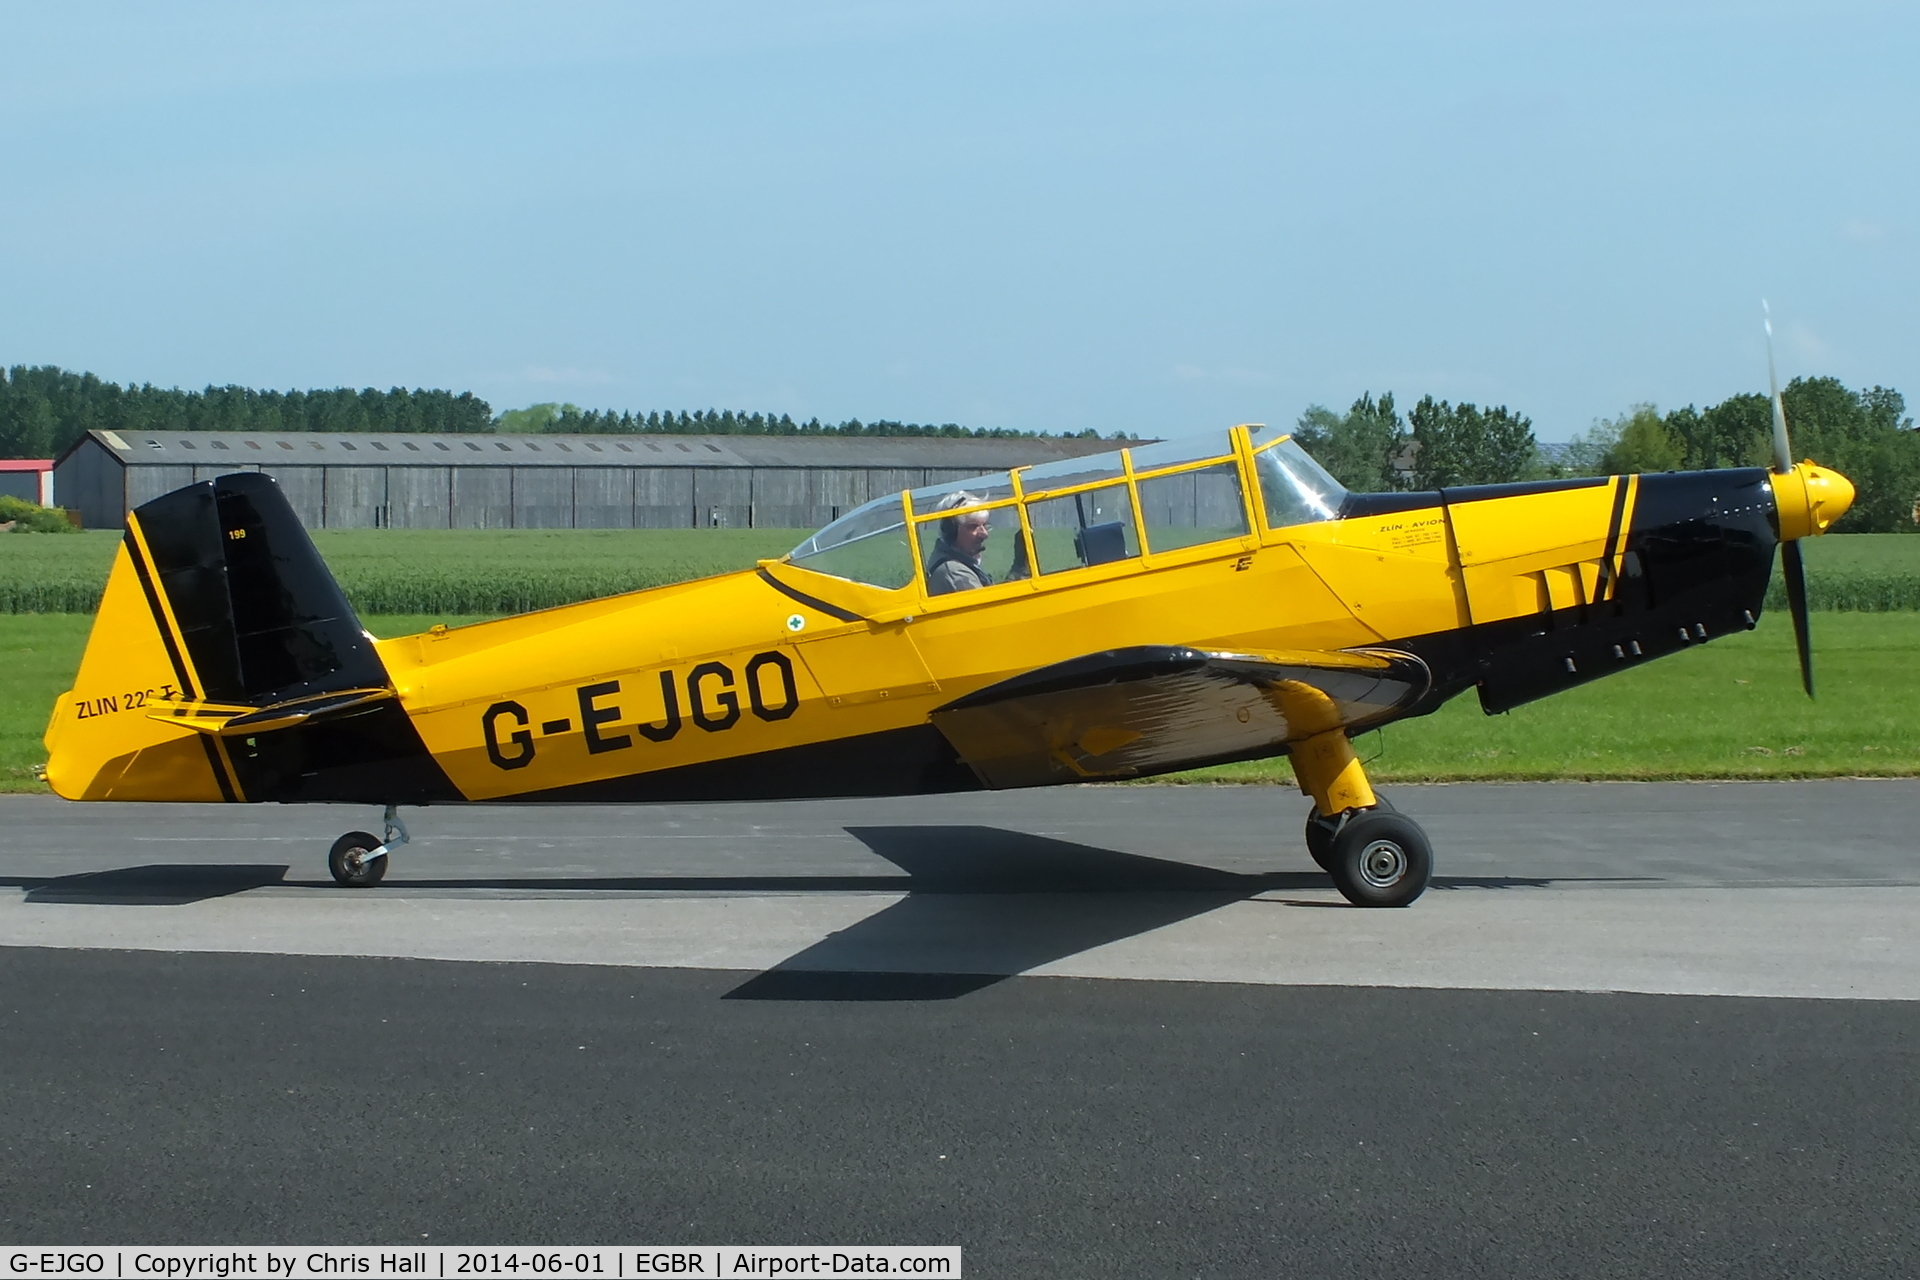 G-EJGO, 1958 Zlin Z-226 Trener C/N 199, at Breighton's Open Cockpit & Biplane Fly-in, 2014